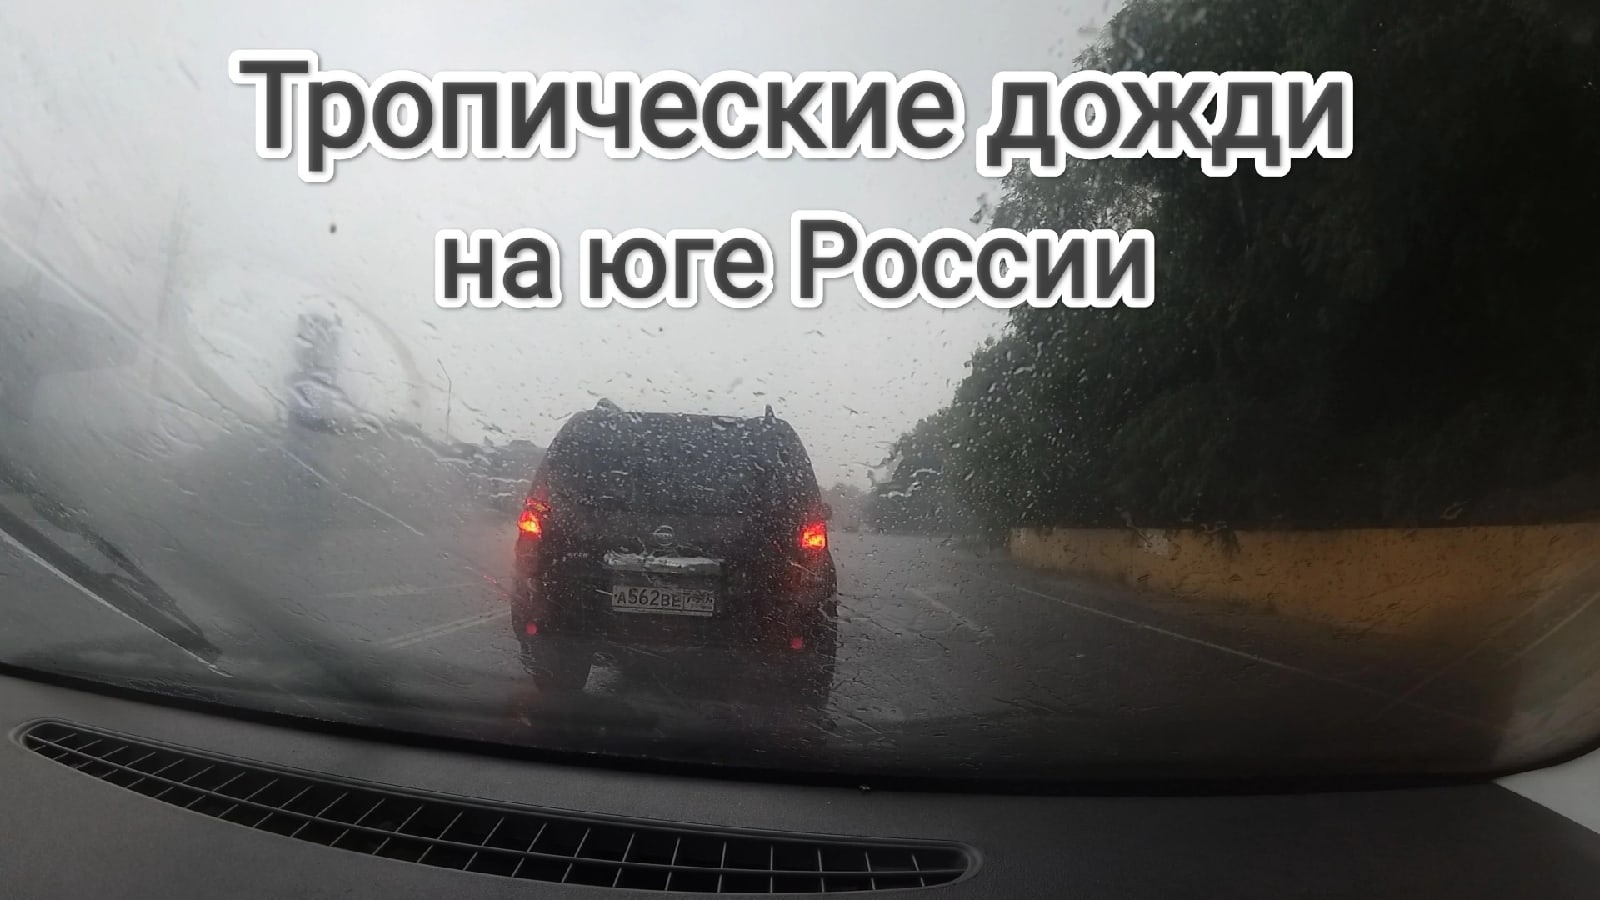 Как выглядят тропические дожди на юге России (во время дождей в Сочи) Вид из автомобиля Travel